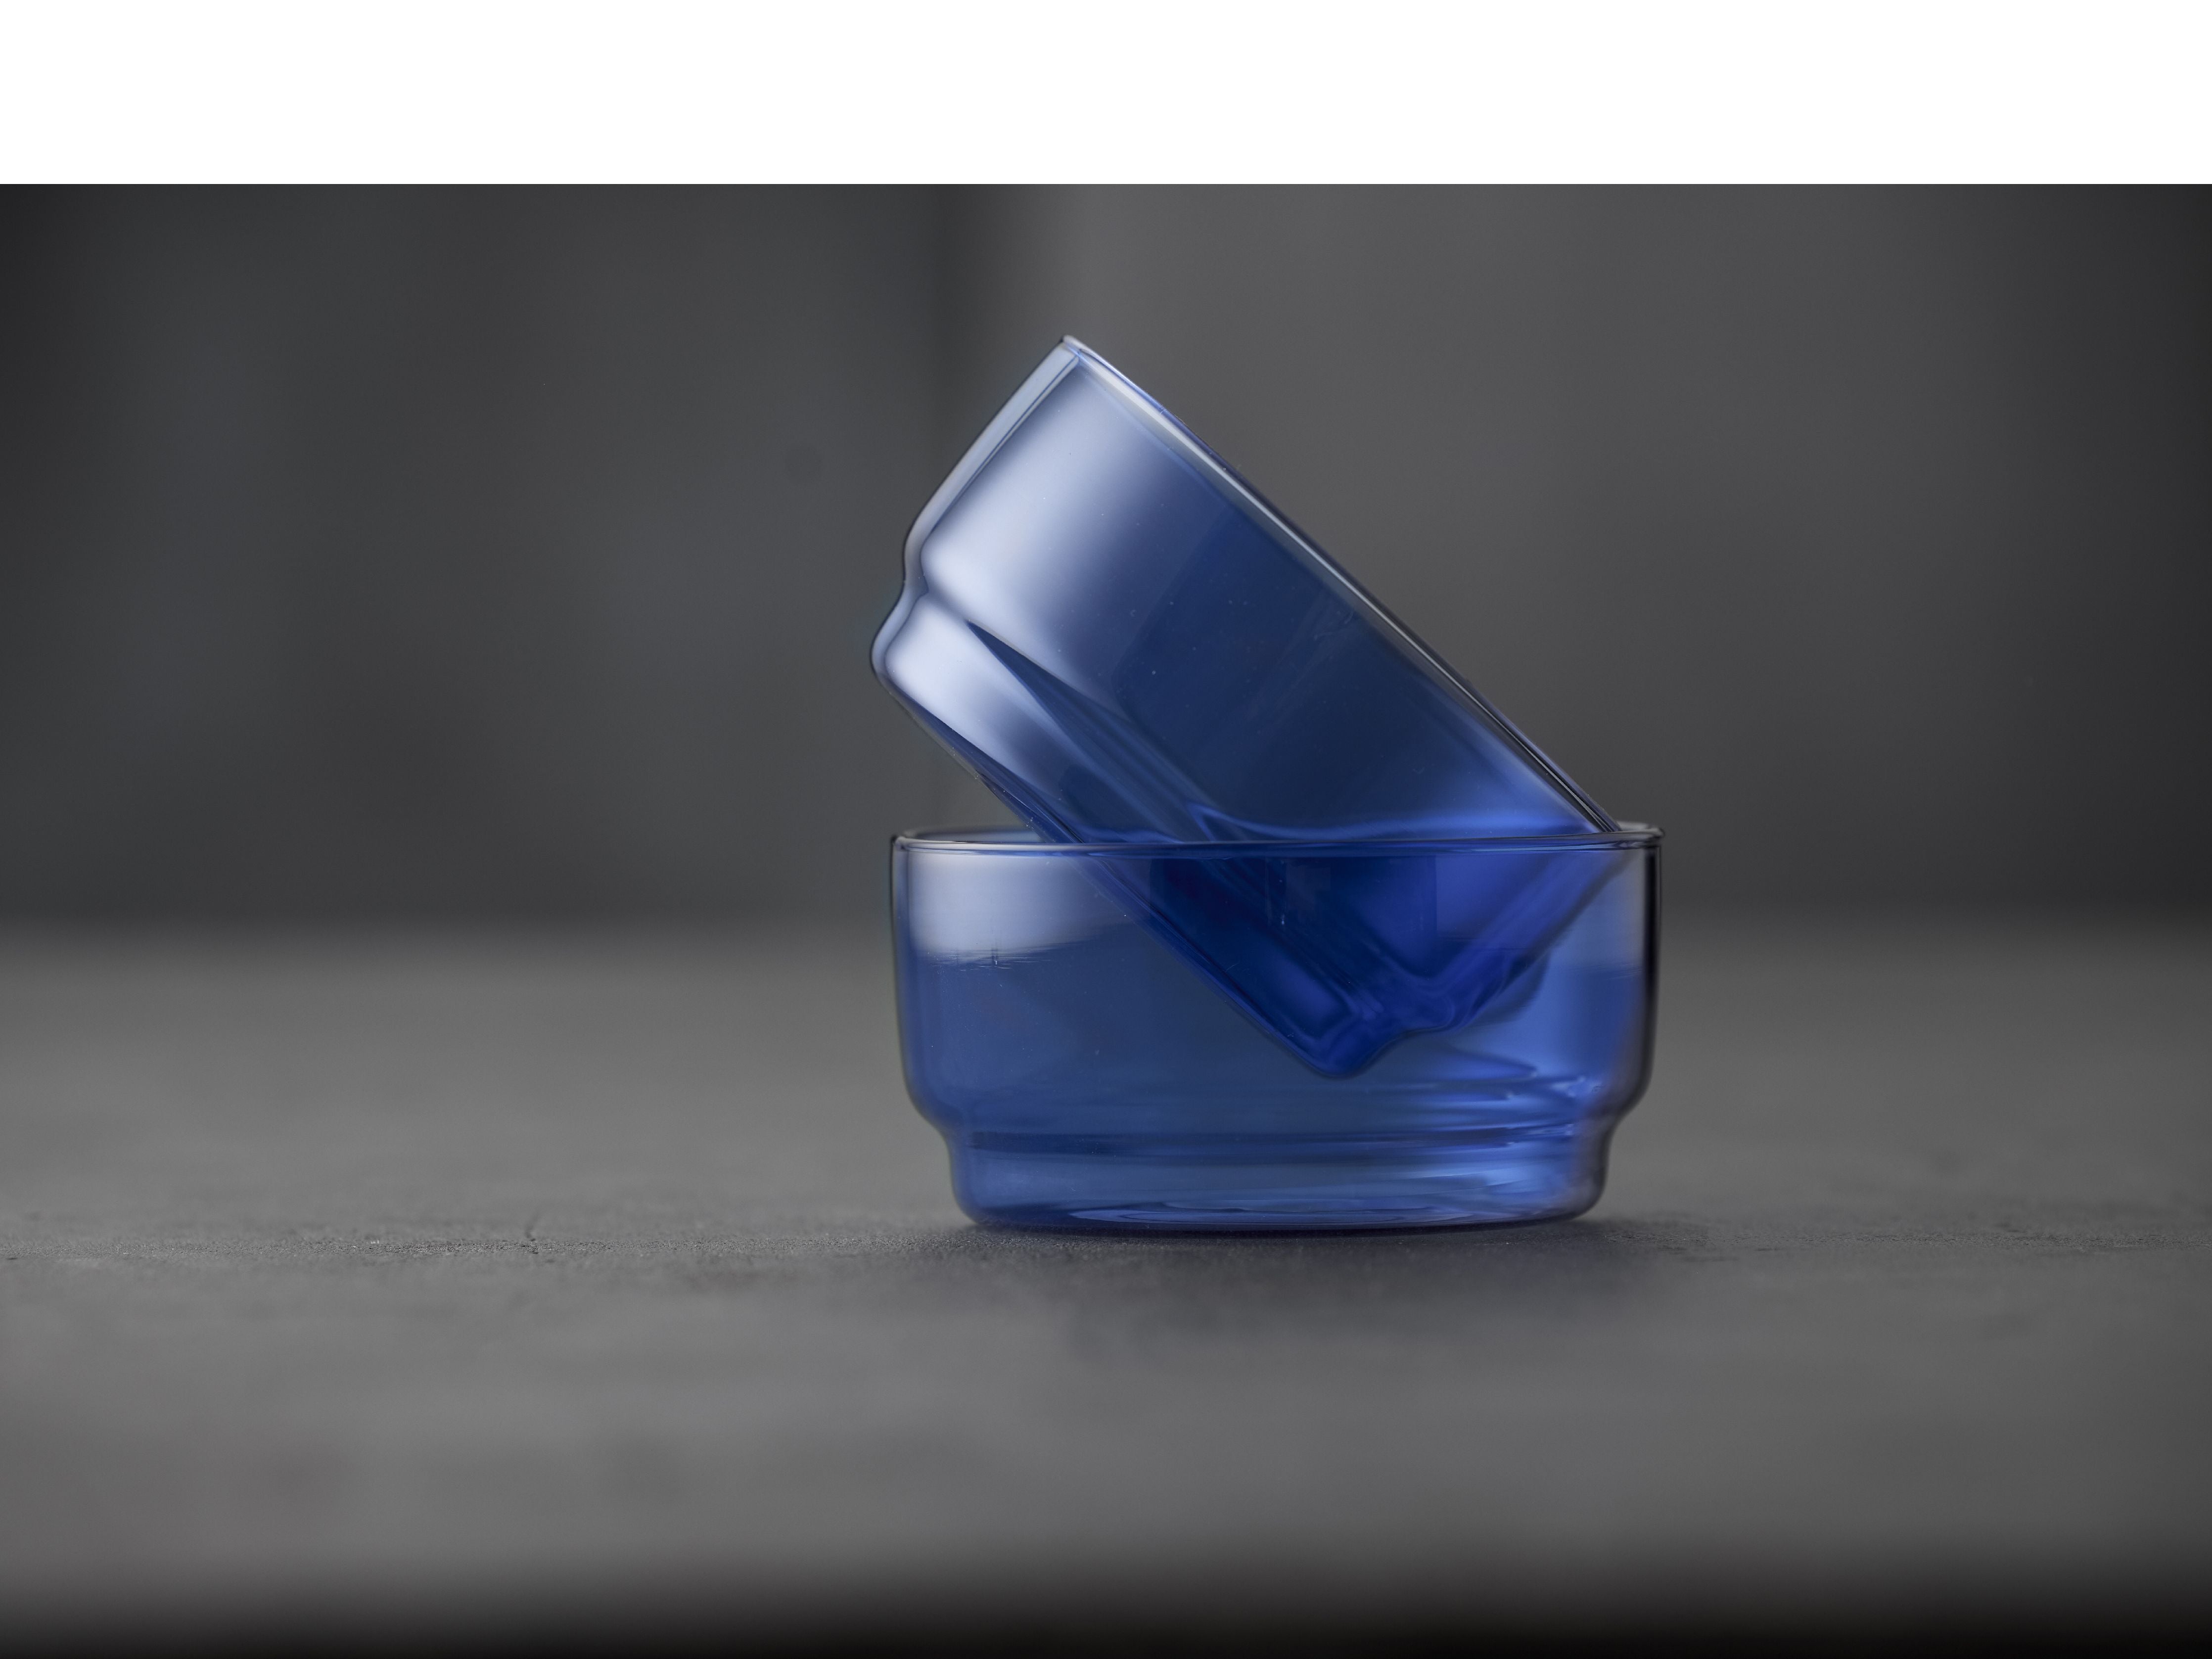 Lyngby Glas Torino Bowl 12 cm 2 pcs., Bleu